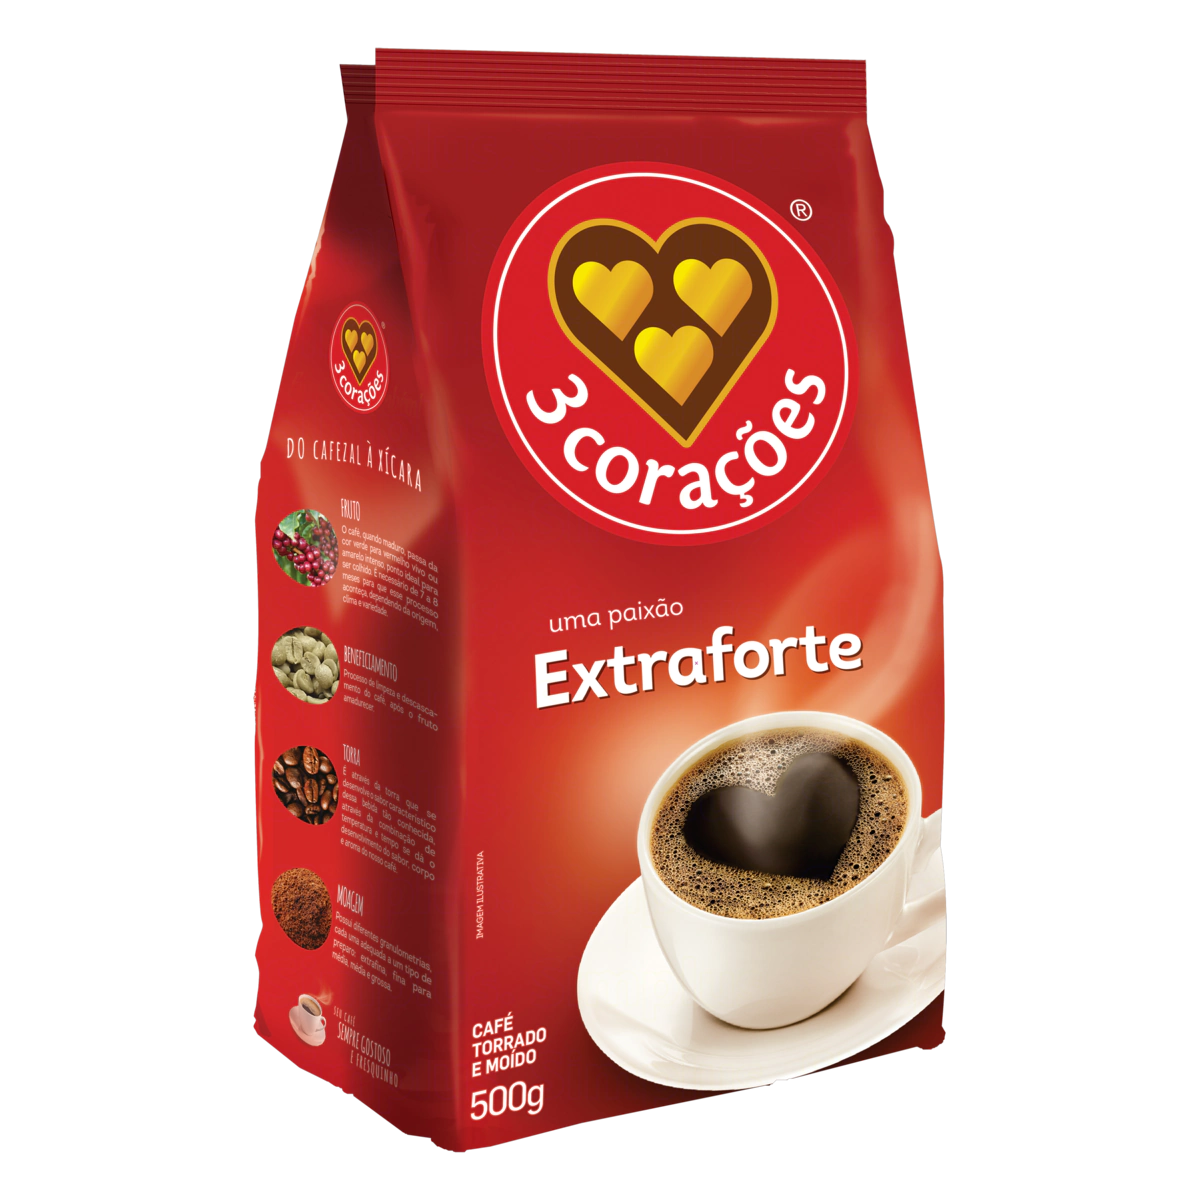 Café Torrado e Moído Extraforte 3 Corações Pacote 500g - Extra Strong Roasted and Ground Coffee 3 Hearts 500g Pack